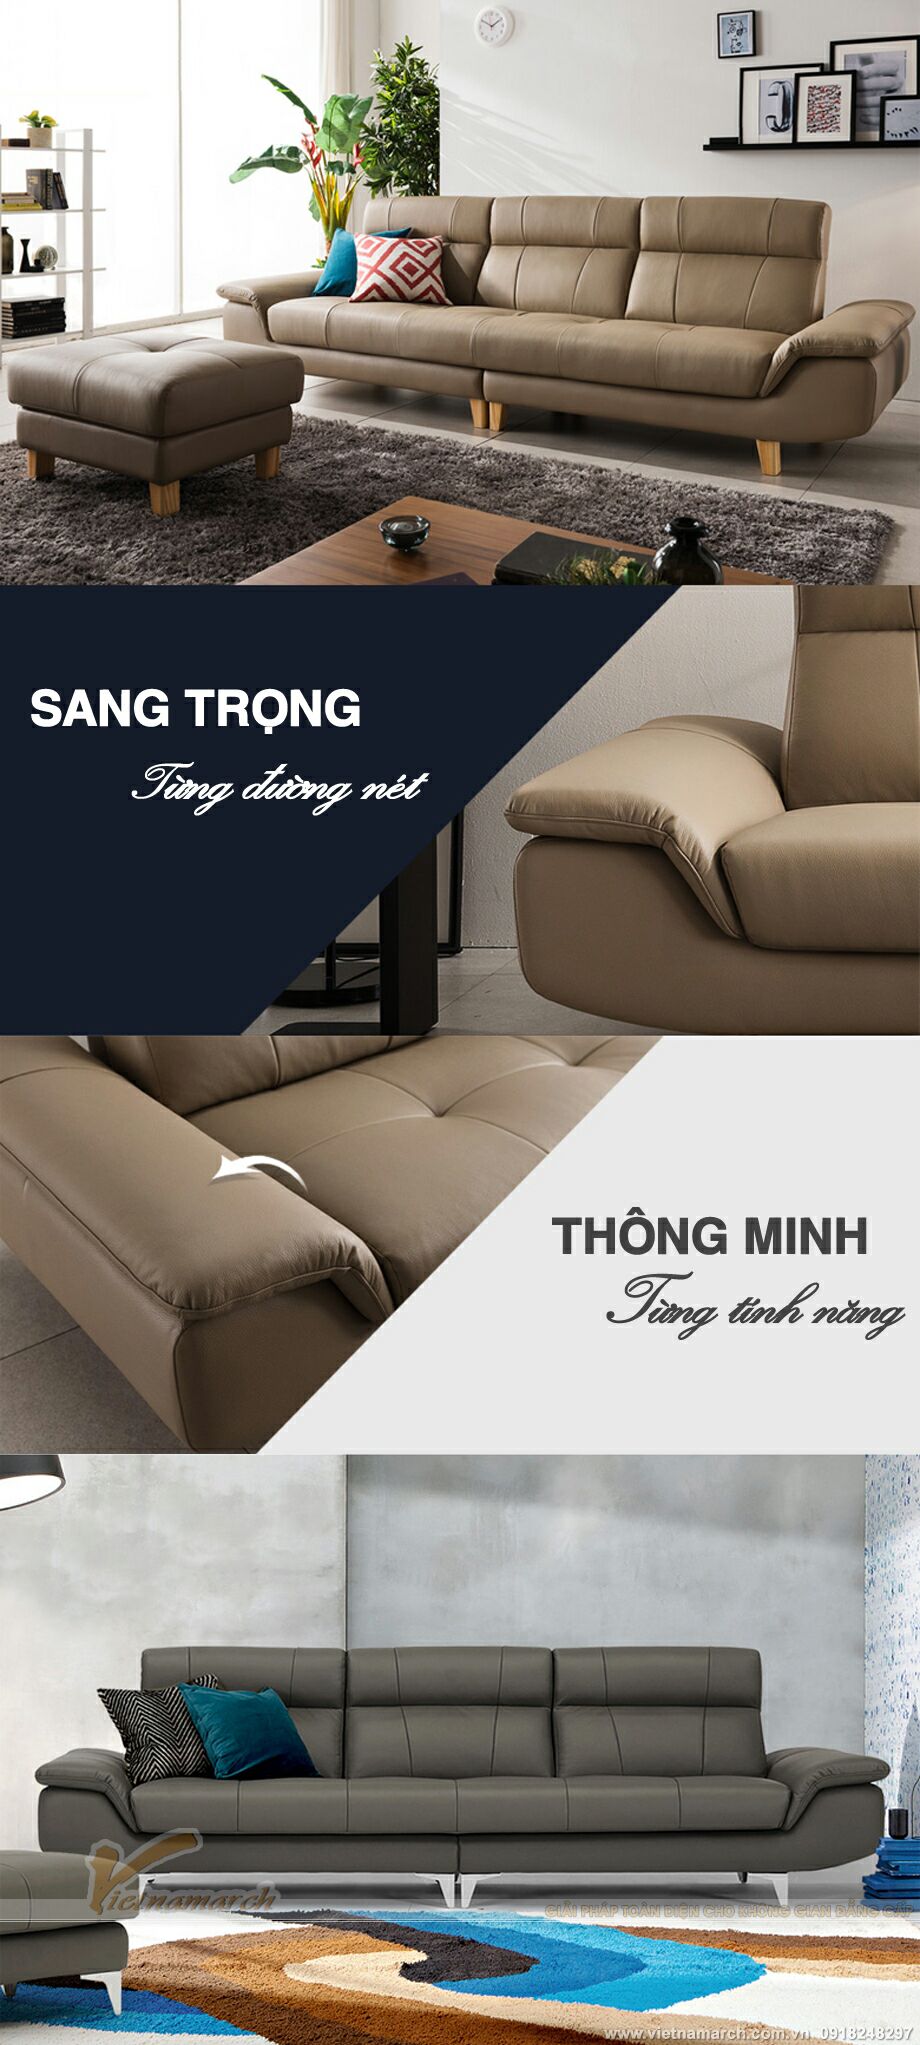 Mẫu ghế sofa văng chất liệu da nhập khẩu Italia cao cấp – Mã: SDV-001 > Ngắm tác phẩm với vô số các góc nhìn để cảm nhận.